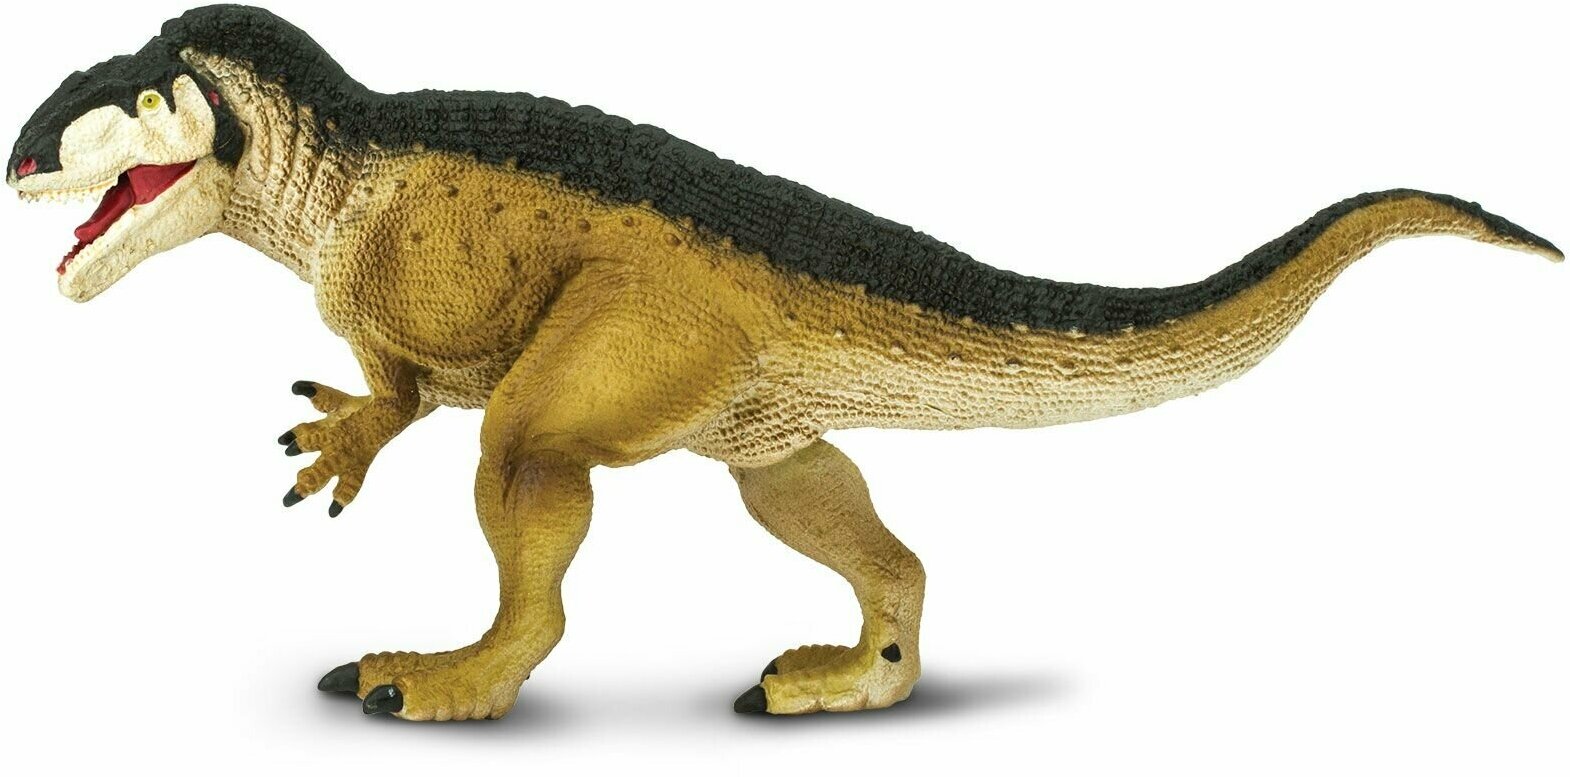 Фигурка животного динозавра Safari Ltd Акрокантозавр XL, для детей, игрушка коллекционная, 302329